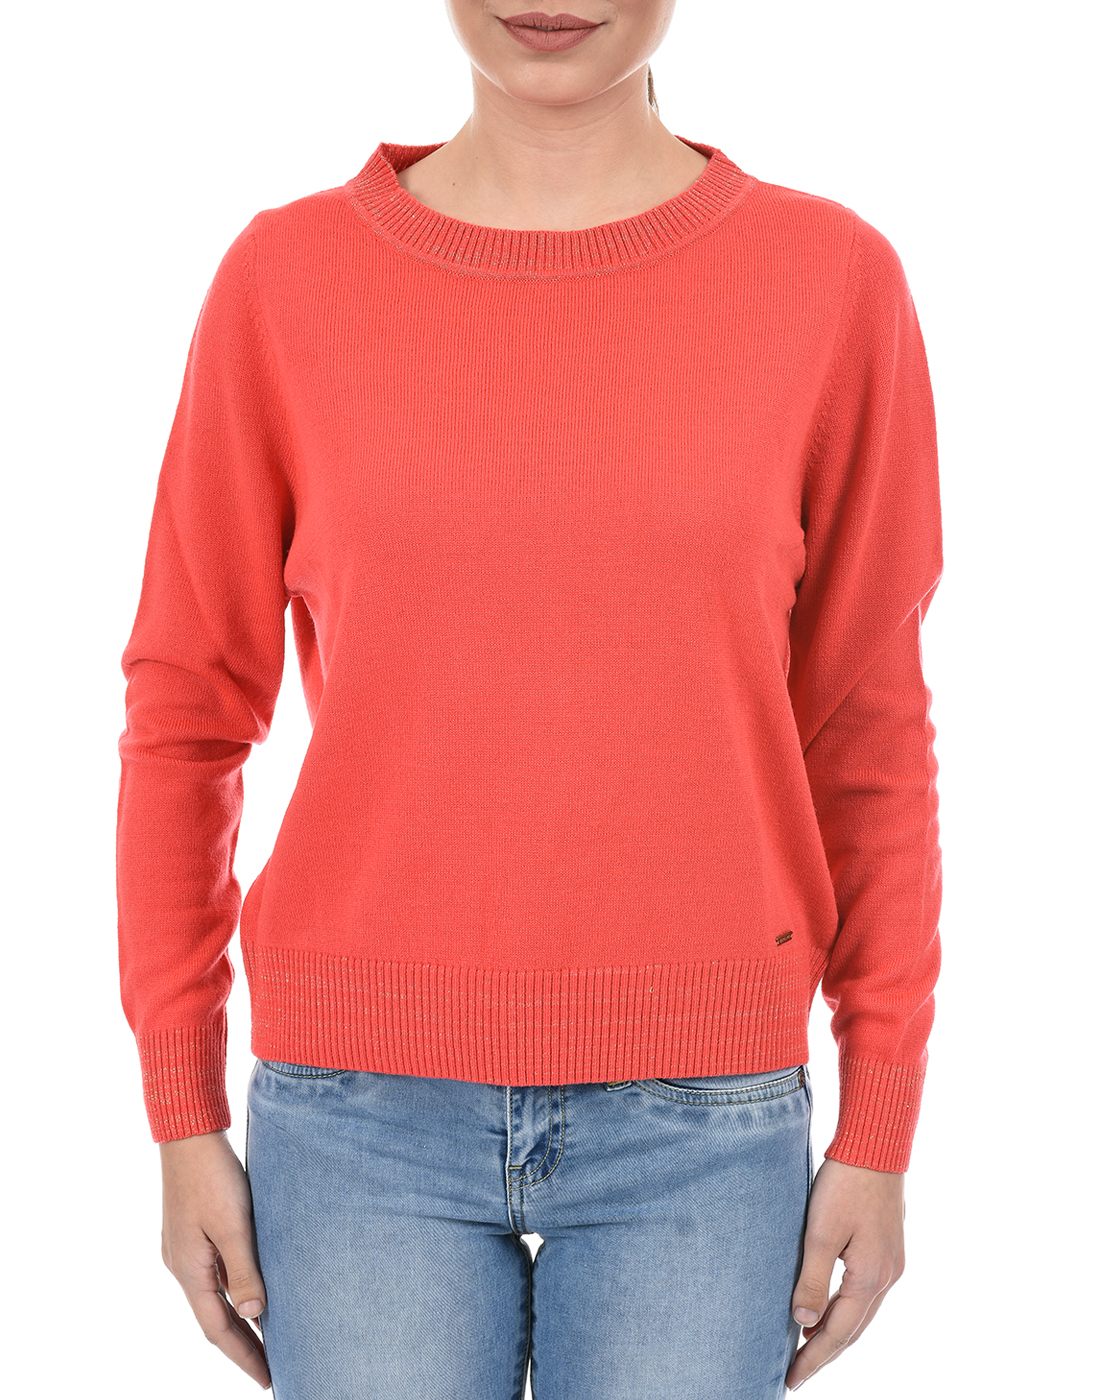 Species Women Solid Orange Sweater